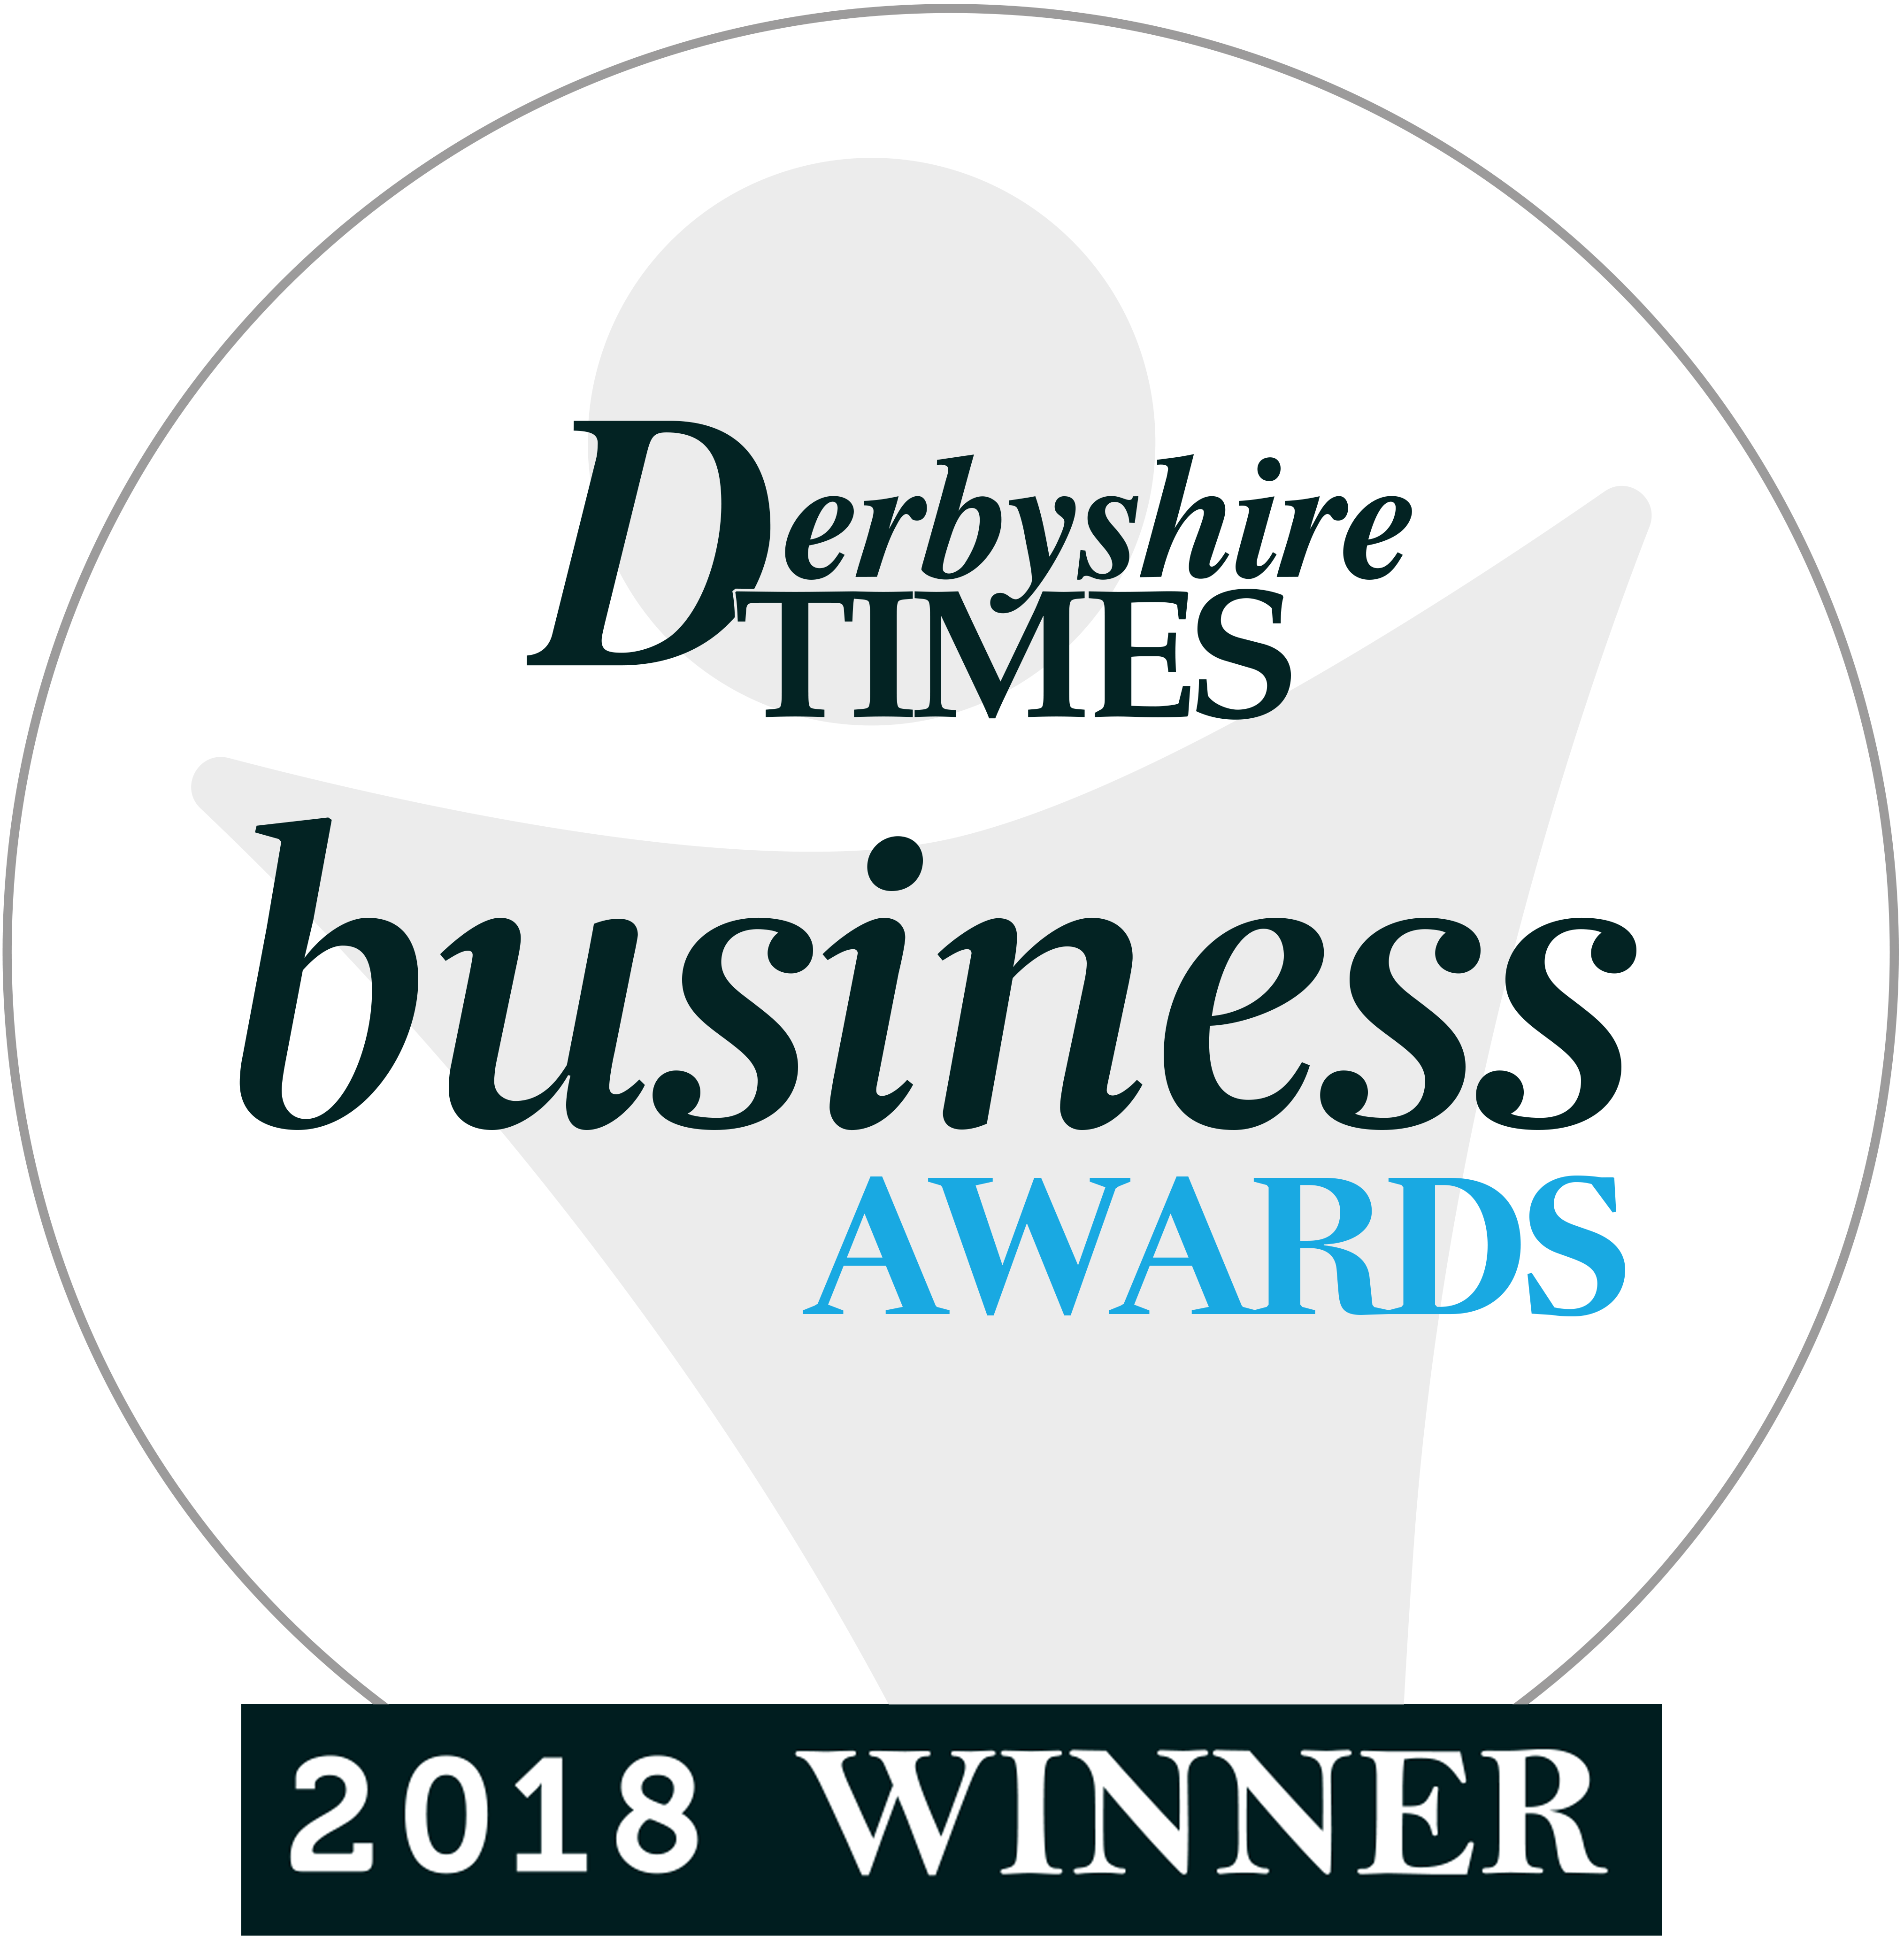 Derbyshire Times Business Awards 2018 - Lifetime Achievement